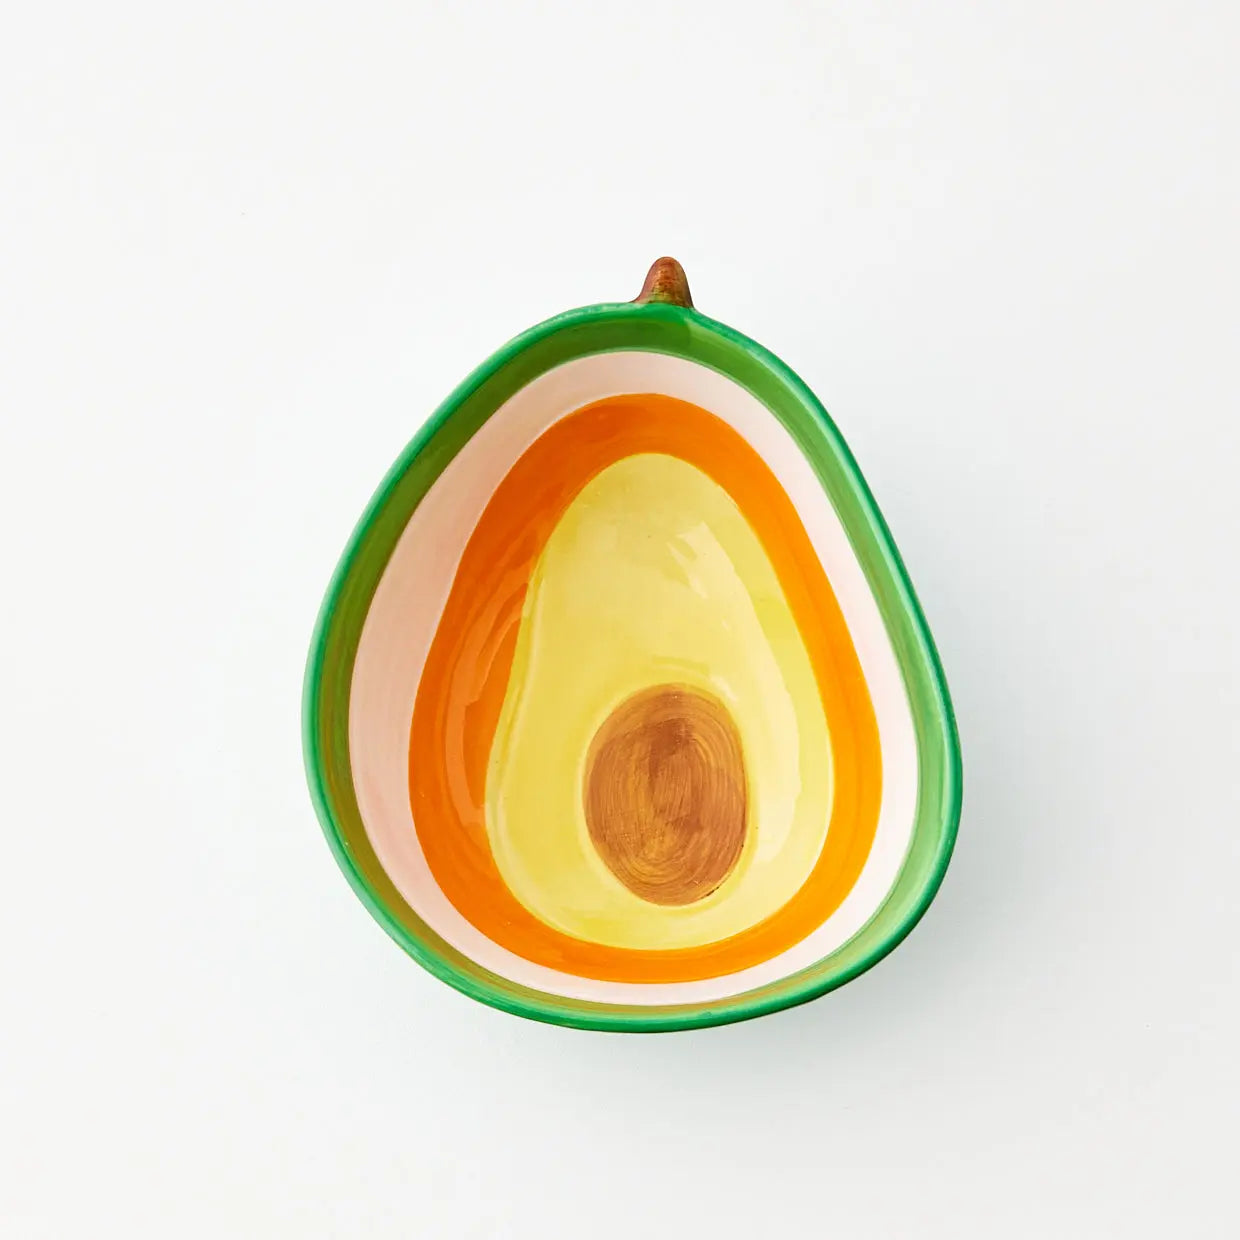 Avocado Ceramic Bowl Green - GigiandTom